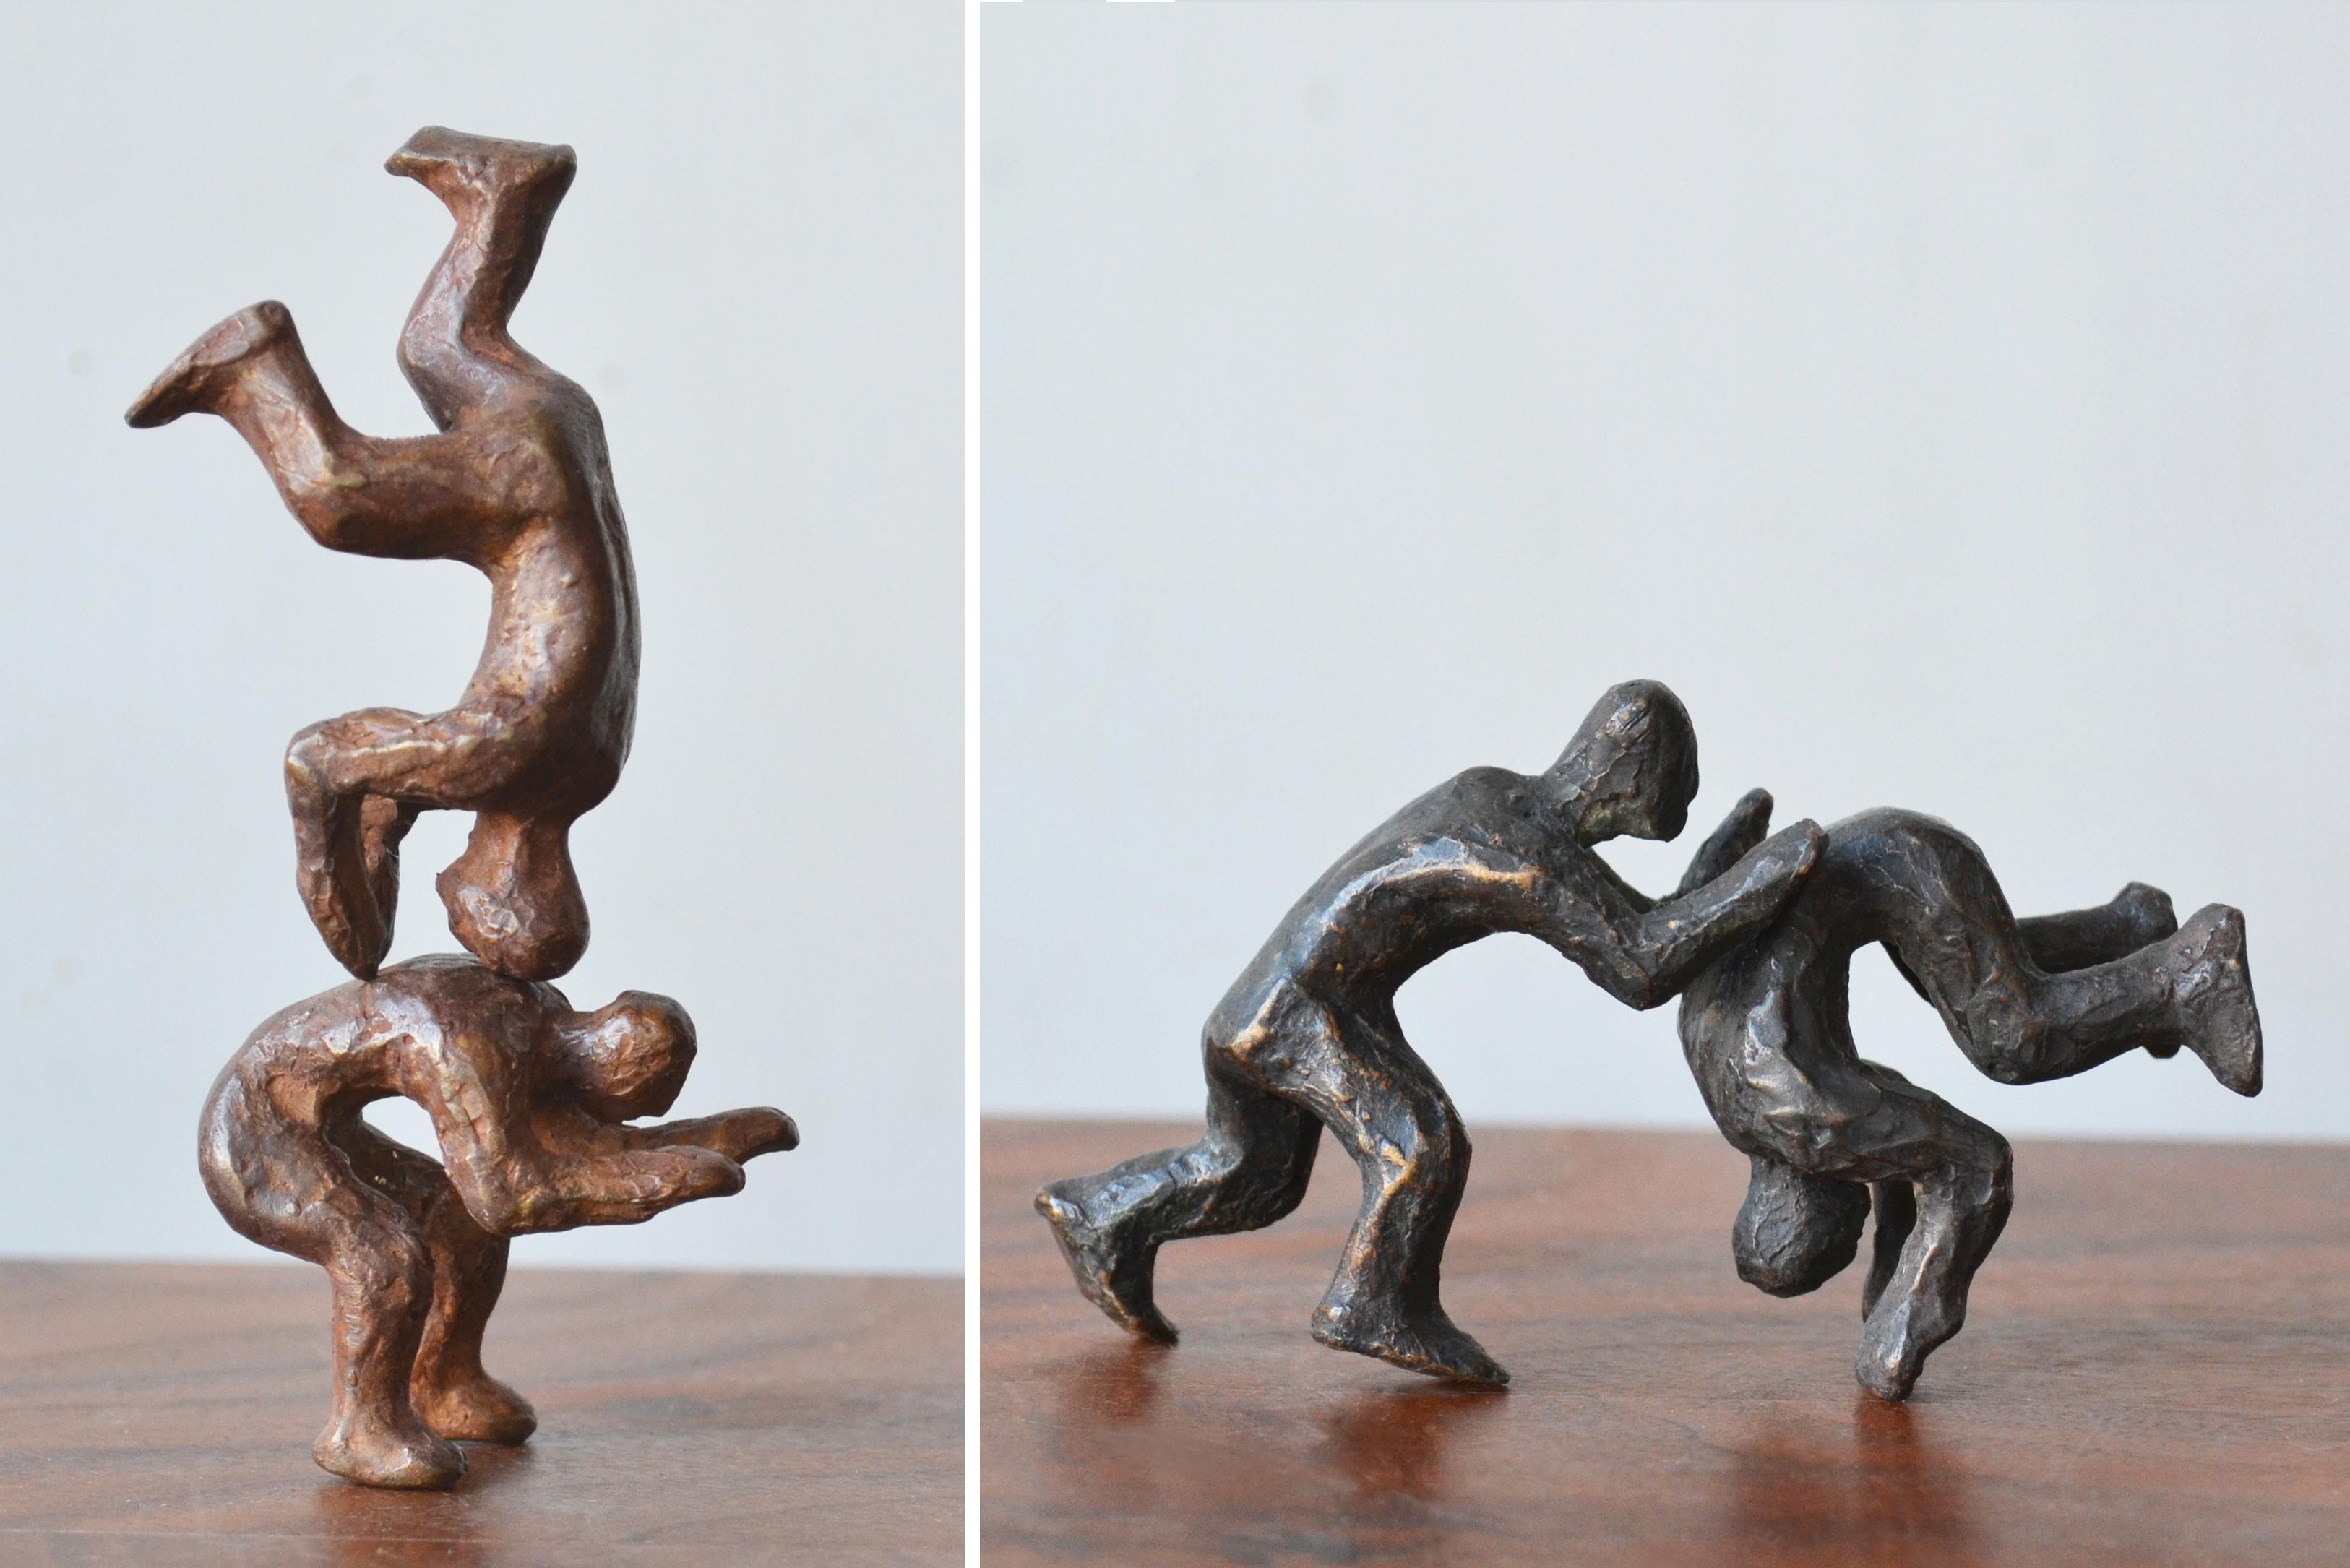 Figurative Sculpture Noa Bornstein - « Pourquoi combattre quand on peut jouer ? » 4 paires de figures interactives en bronze